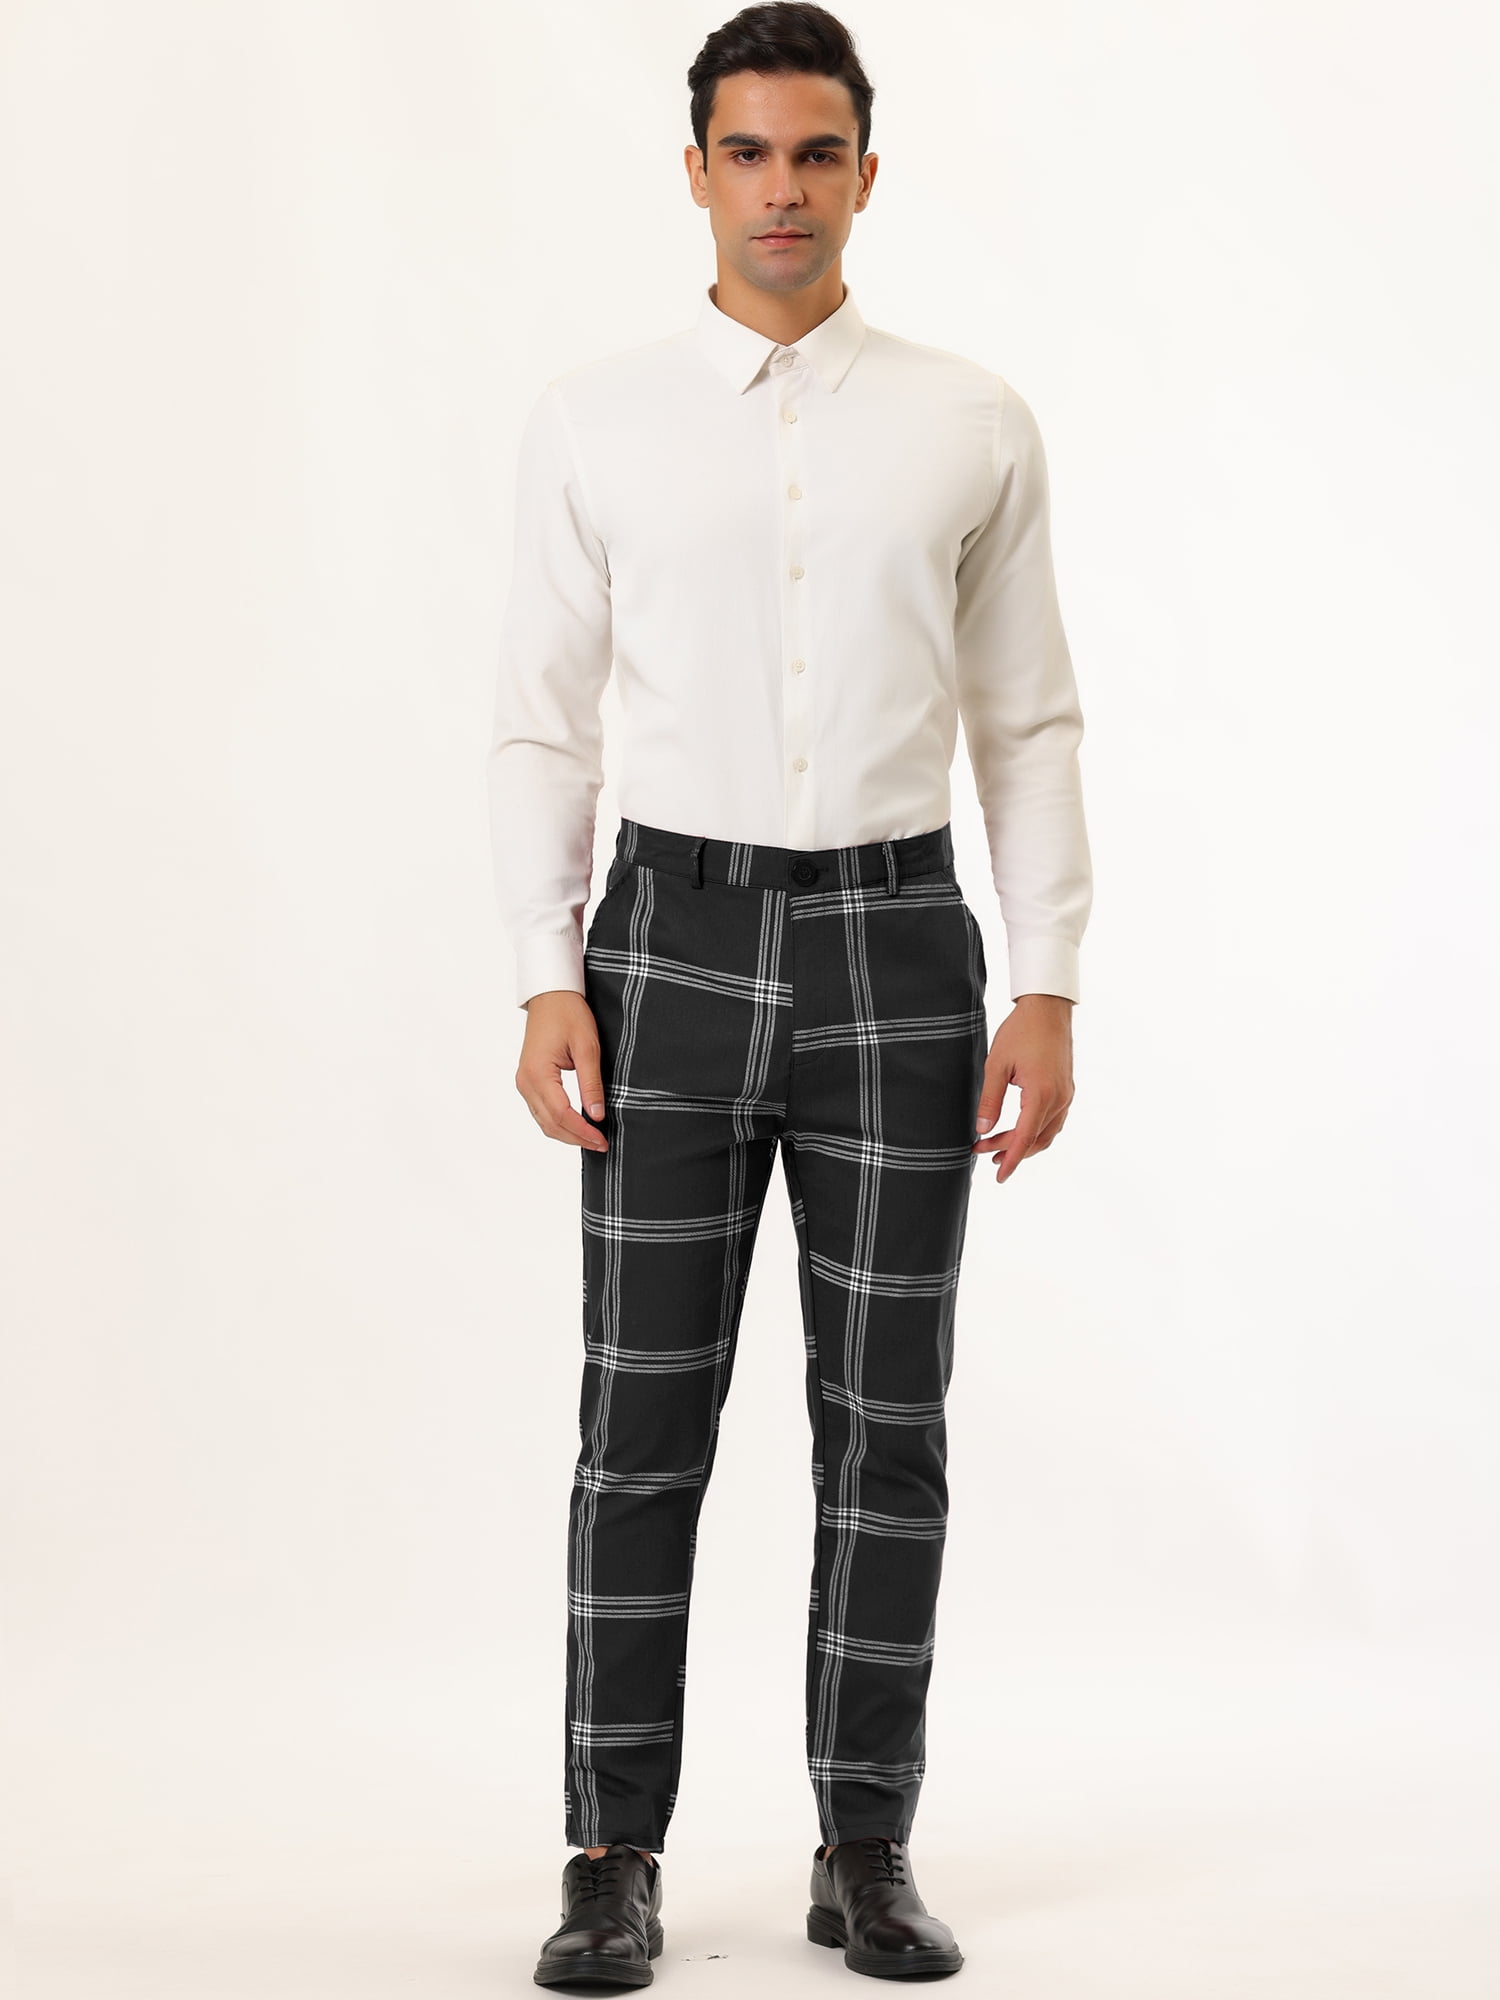 Unique Bargains Men's Plaid Pants Casual Slim Fit Flat Front